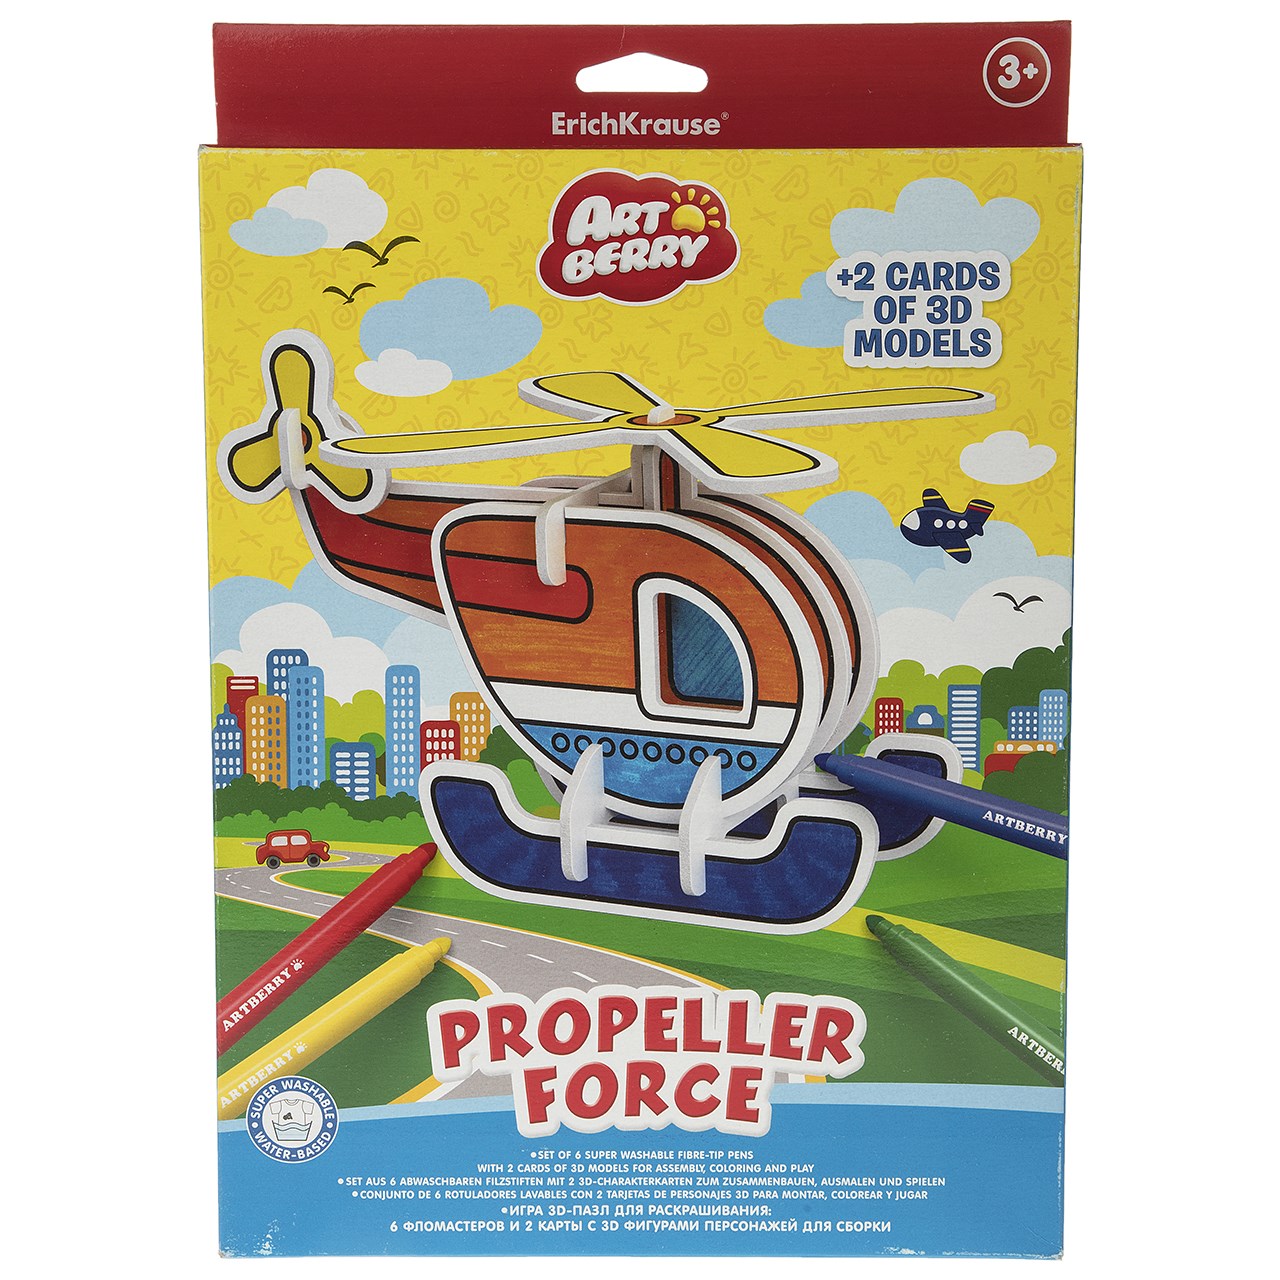 بسته مدل سازی اریک کراوزه مدل Propeller Force